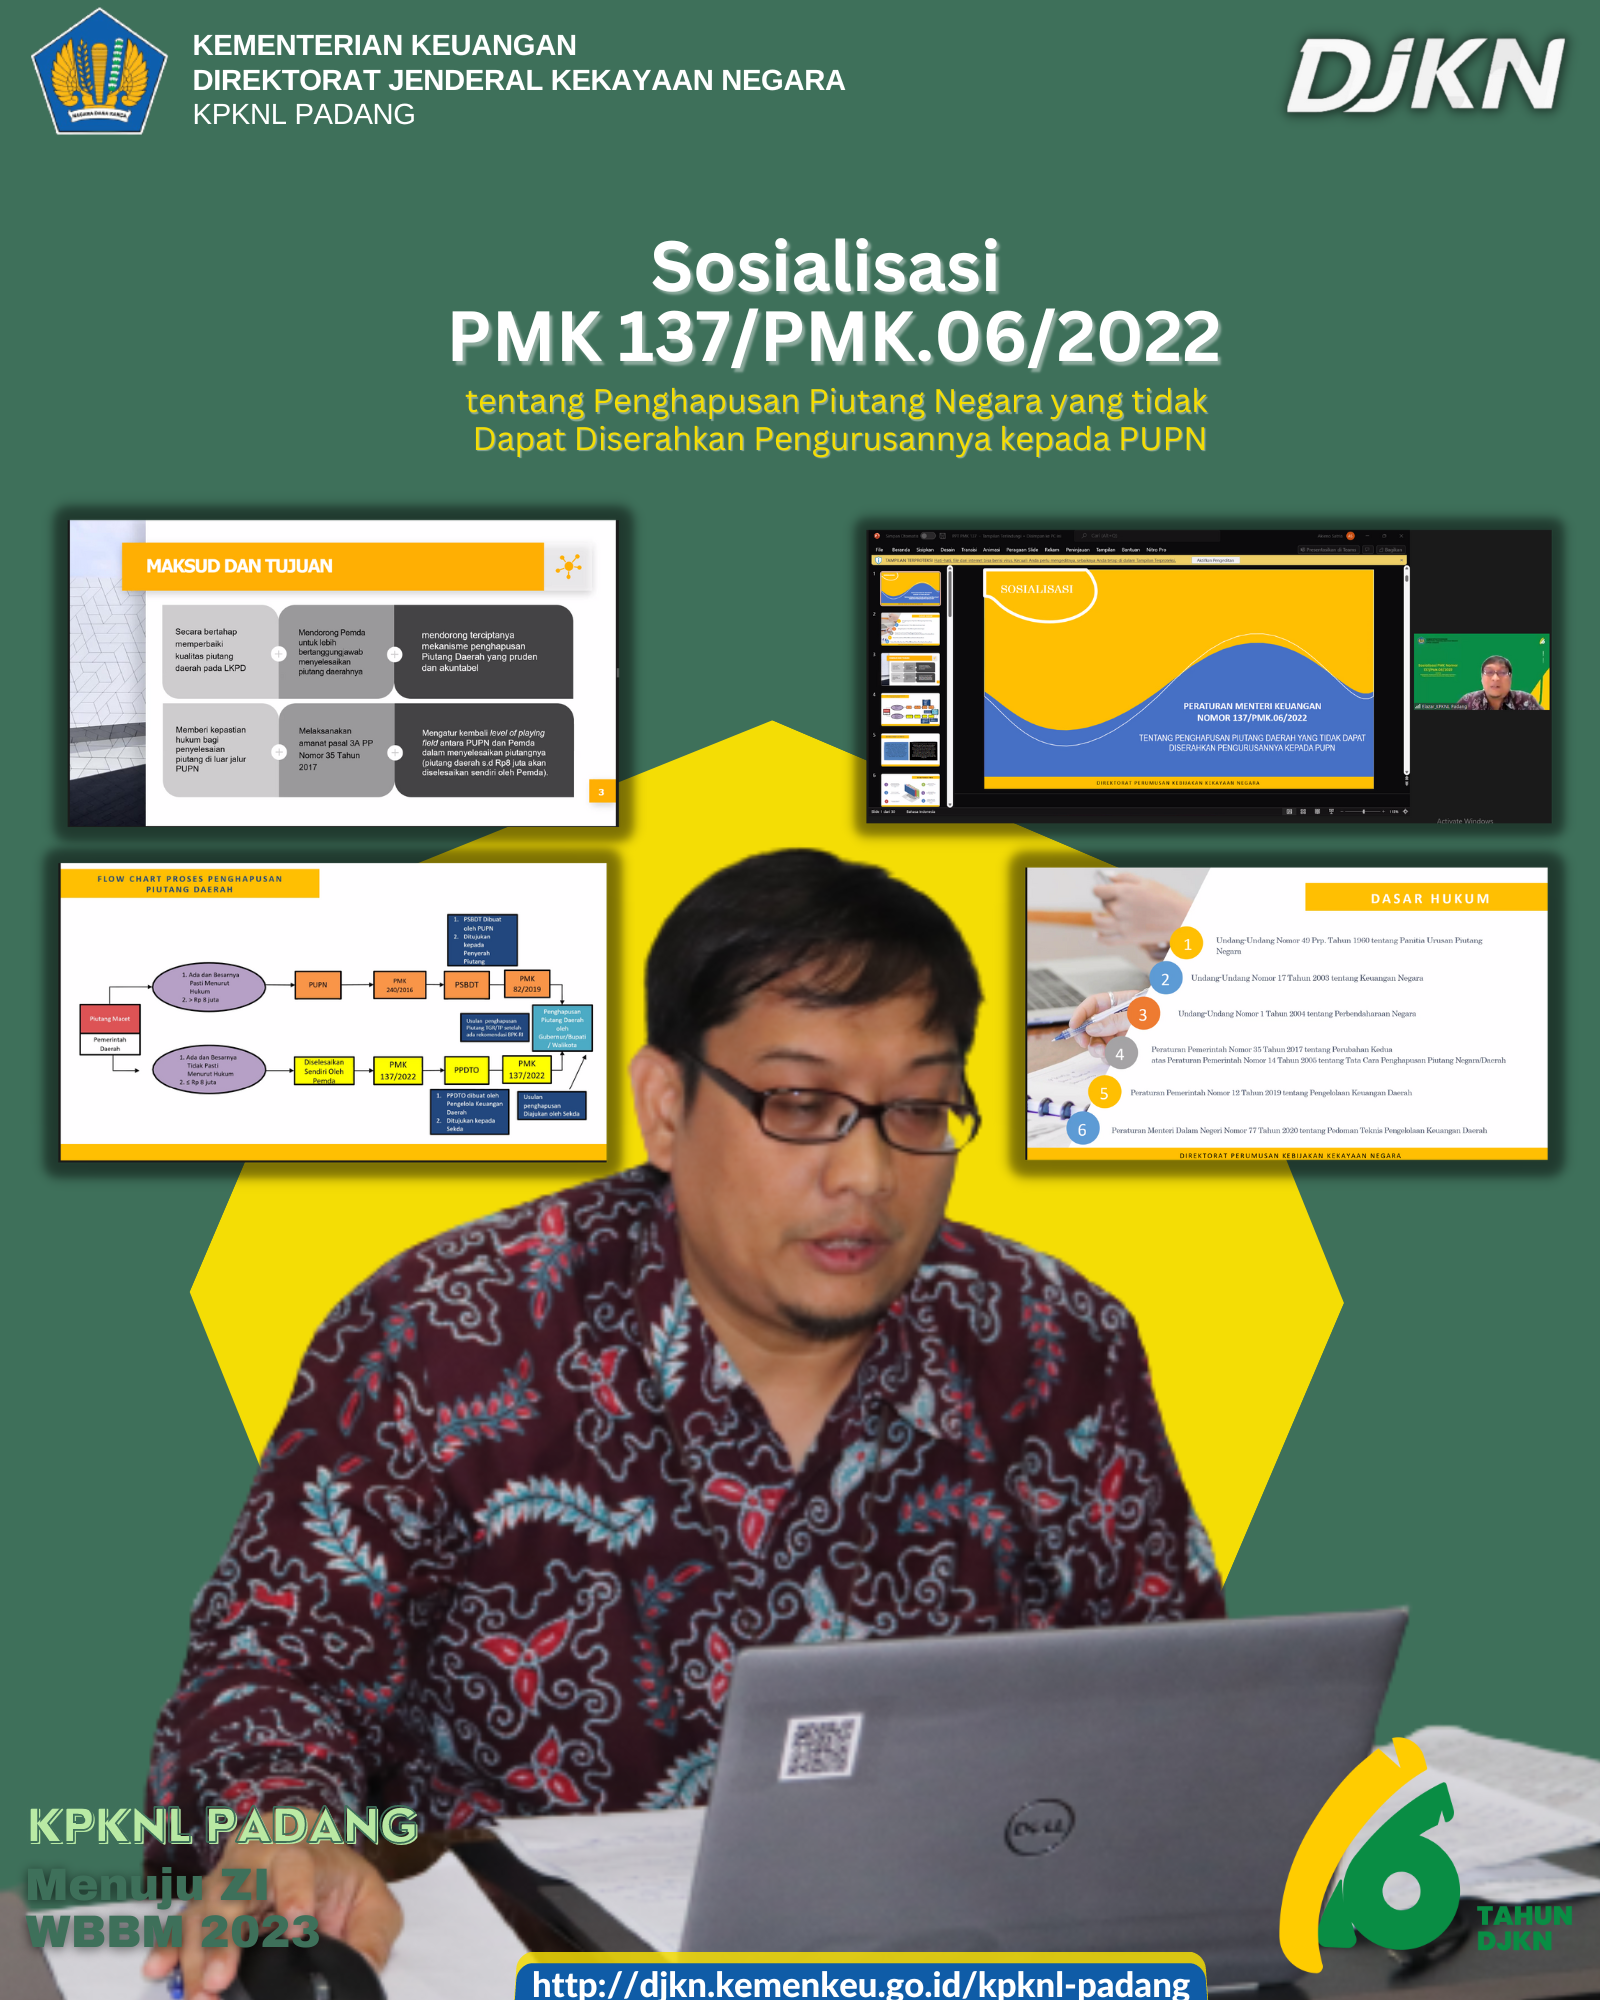 Sosialisasi PMK 137/PMK.06/2022 tentang Penghapusan Piutang Daerah yang Tidak Dapat Diserahkan Pengurusannya kepada PUPN